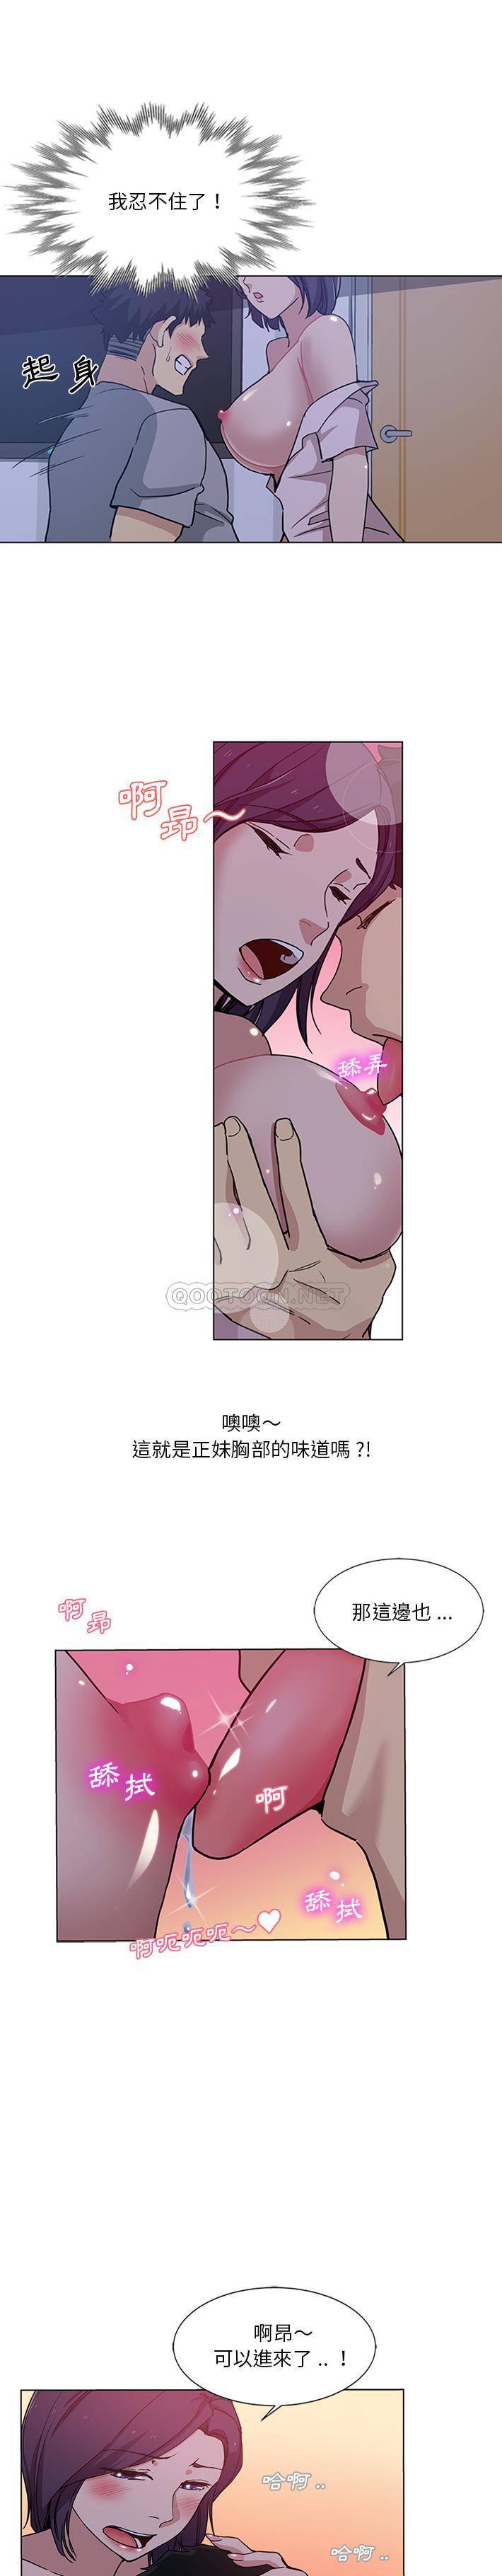 韩国污漫画 危險純友誼 第2话 4